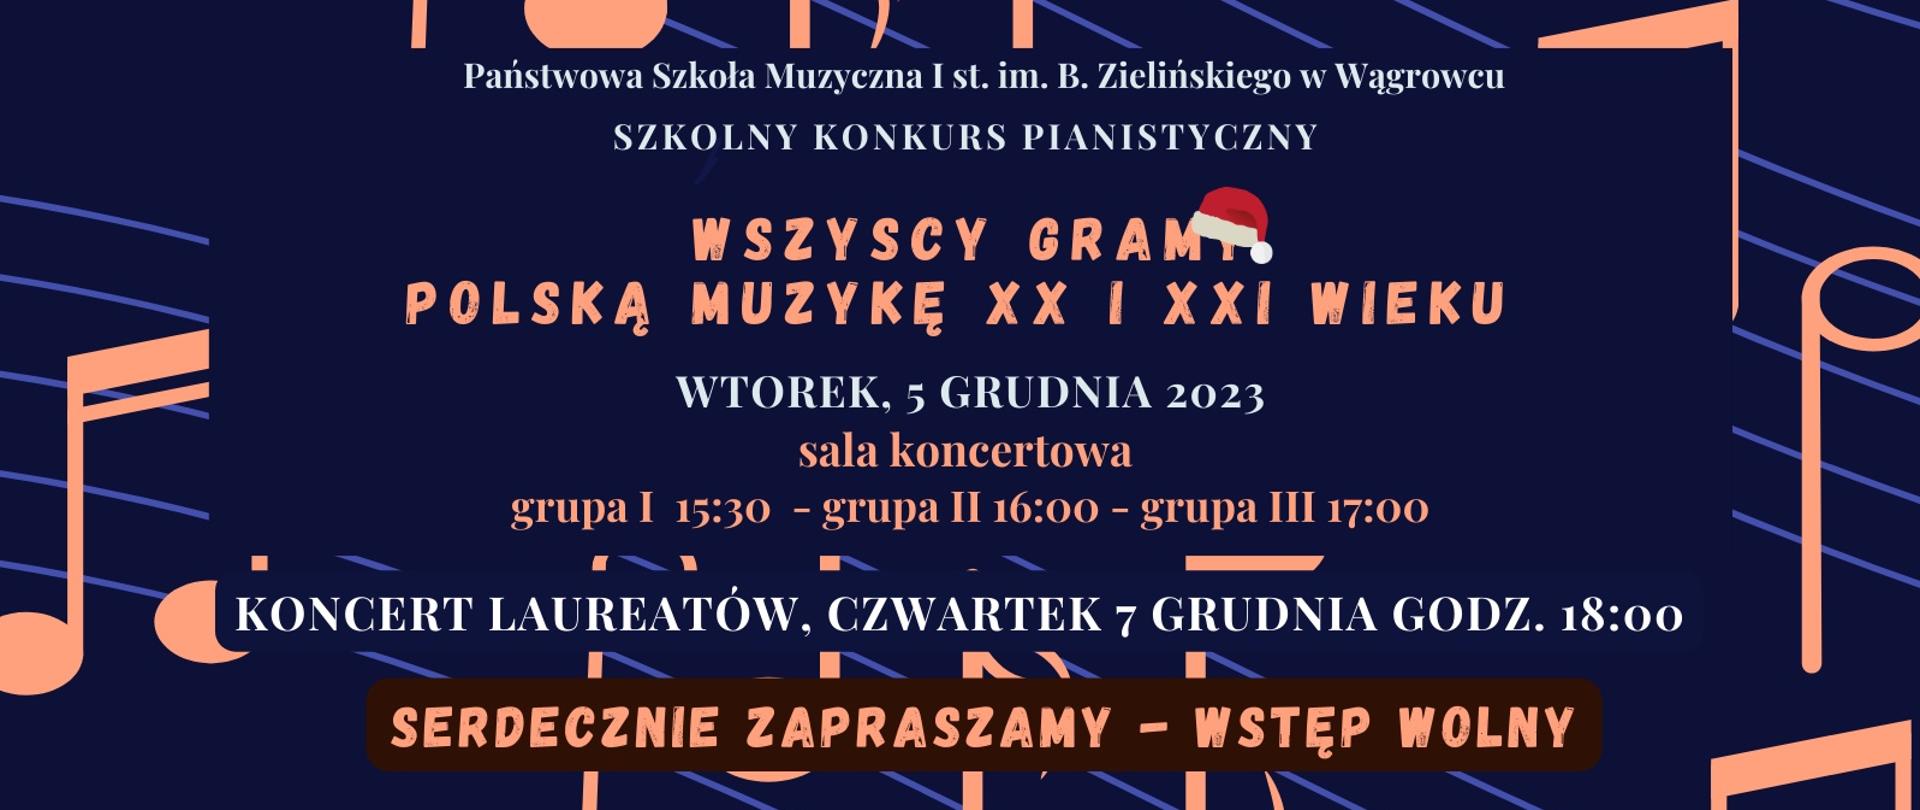 Baner przedstawia informację dotyczącą konkursu klasy fortepianu o temacie polskiej muzyki XX i XXI wieku